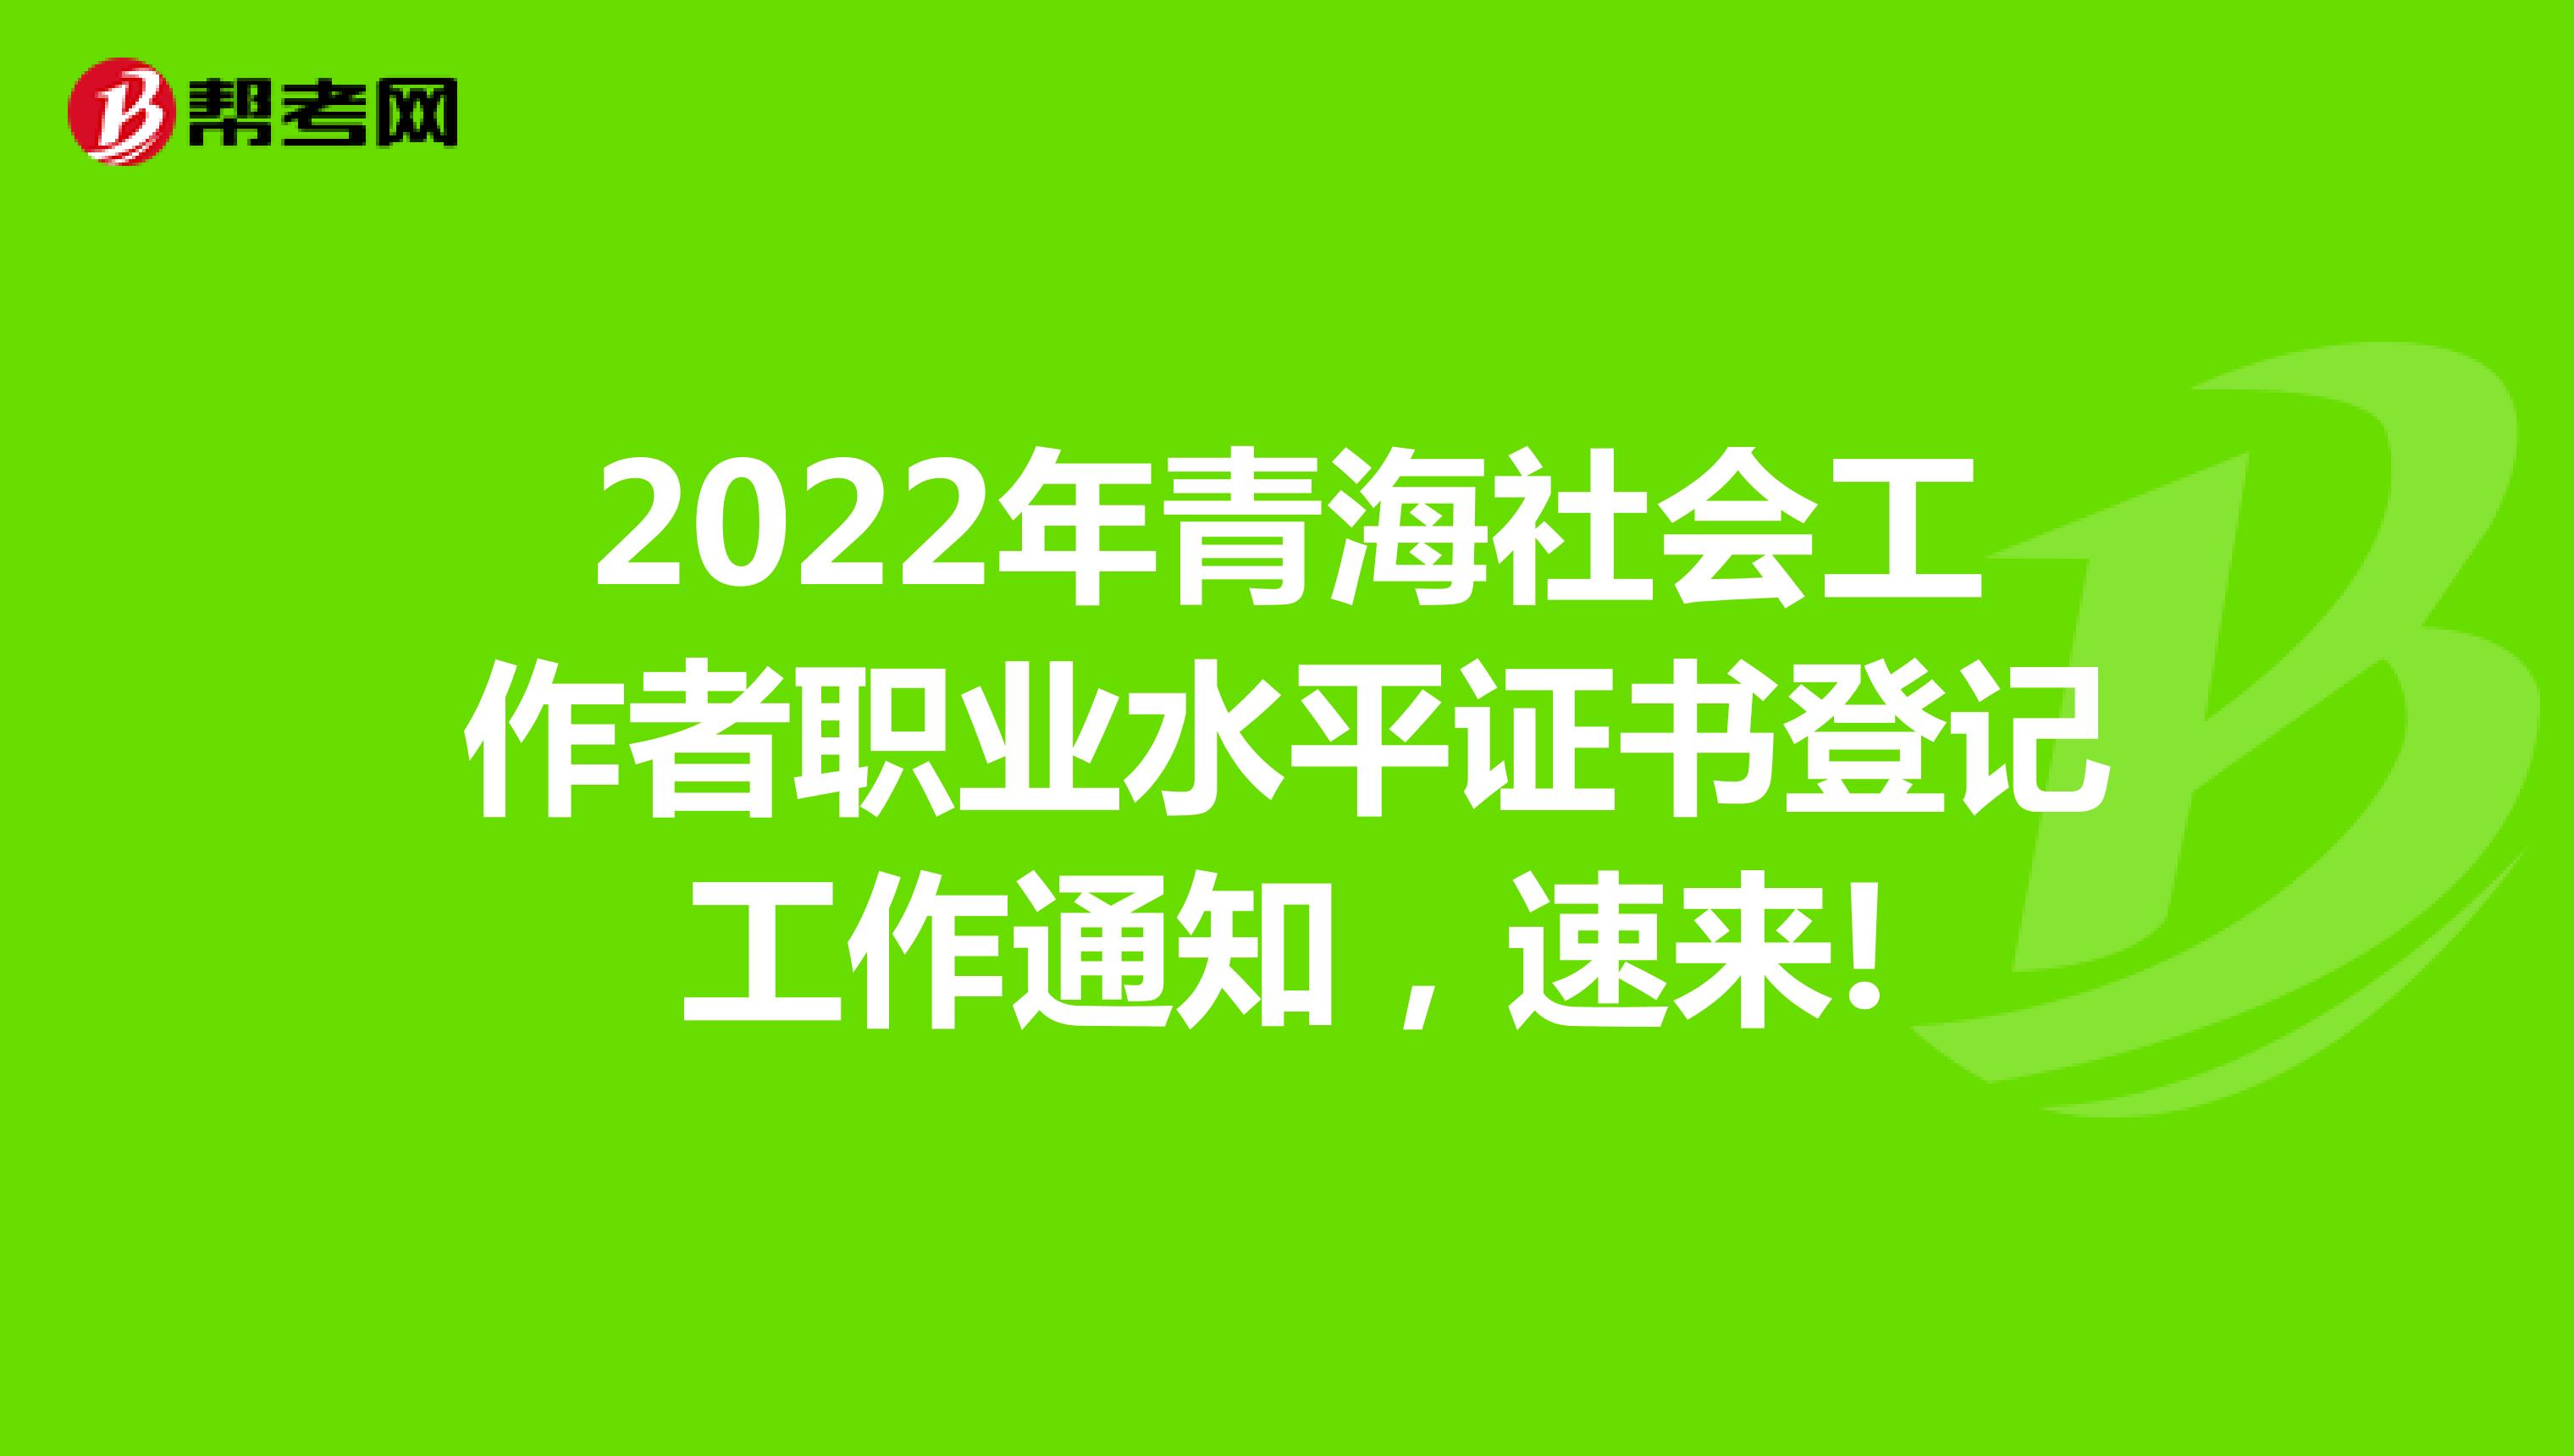 2022年青海社会工作者职业水平证书登记工作通知，速来!